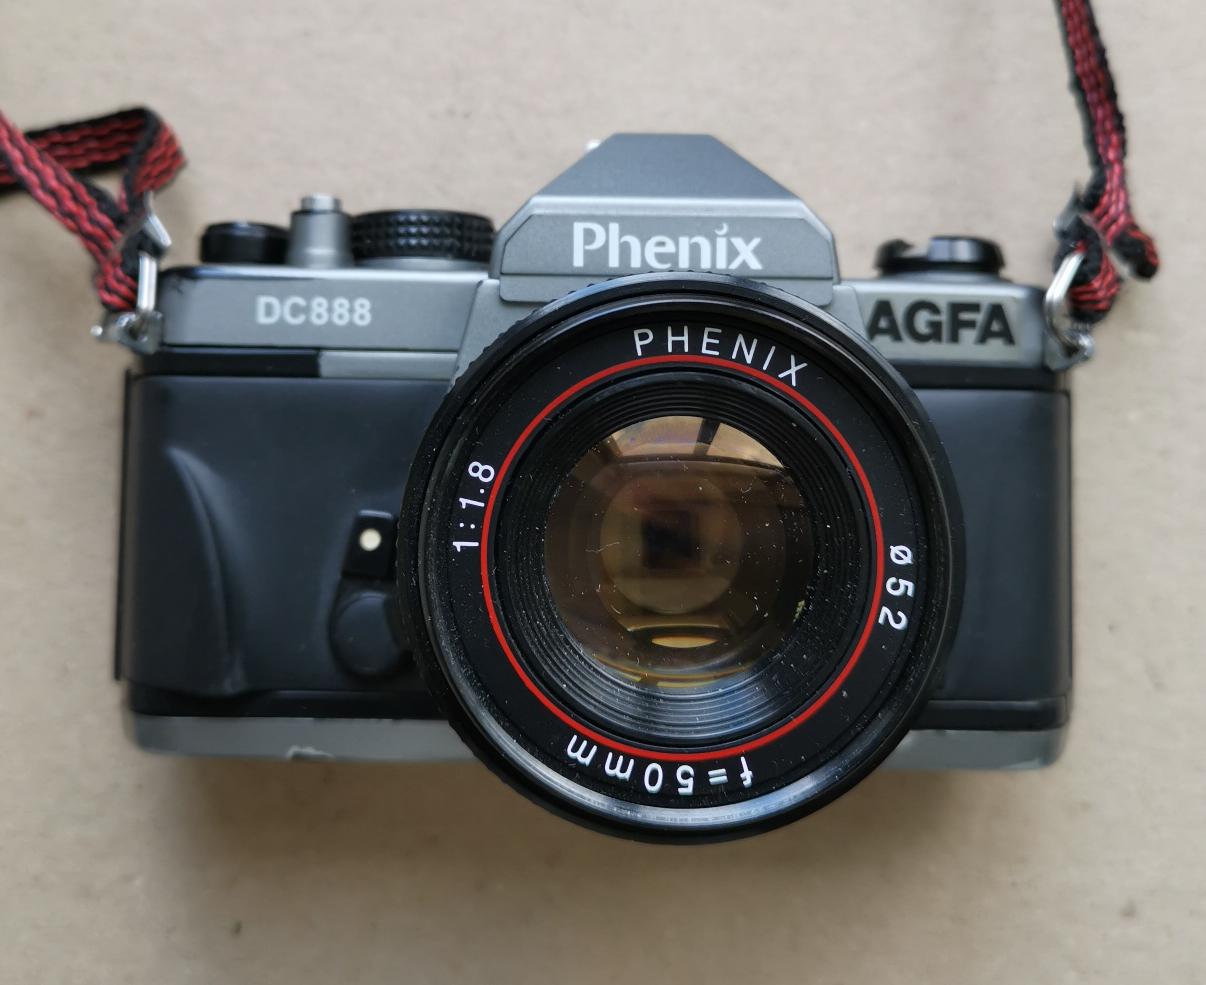 Agfa Phenix DC 888 + Phenix 50/1,8 фото №1